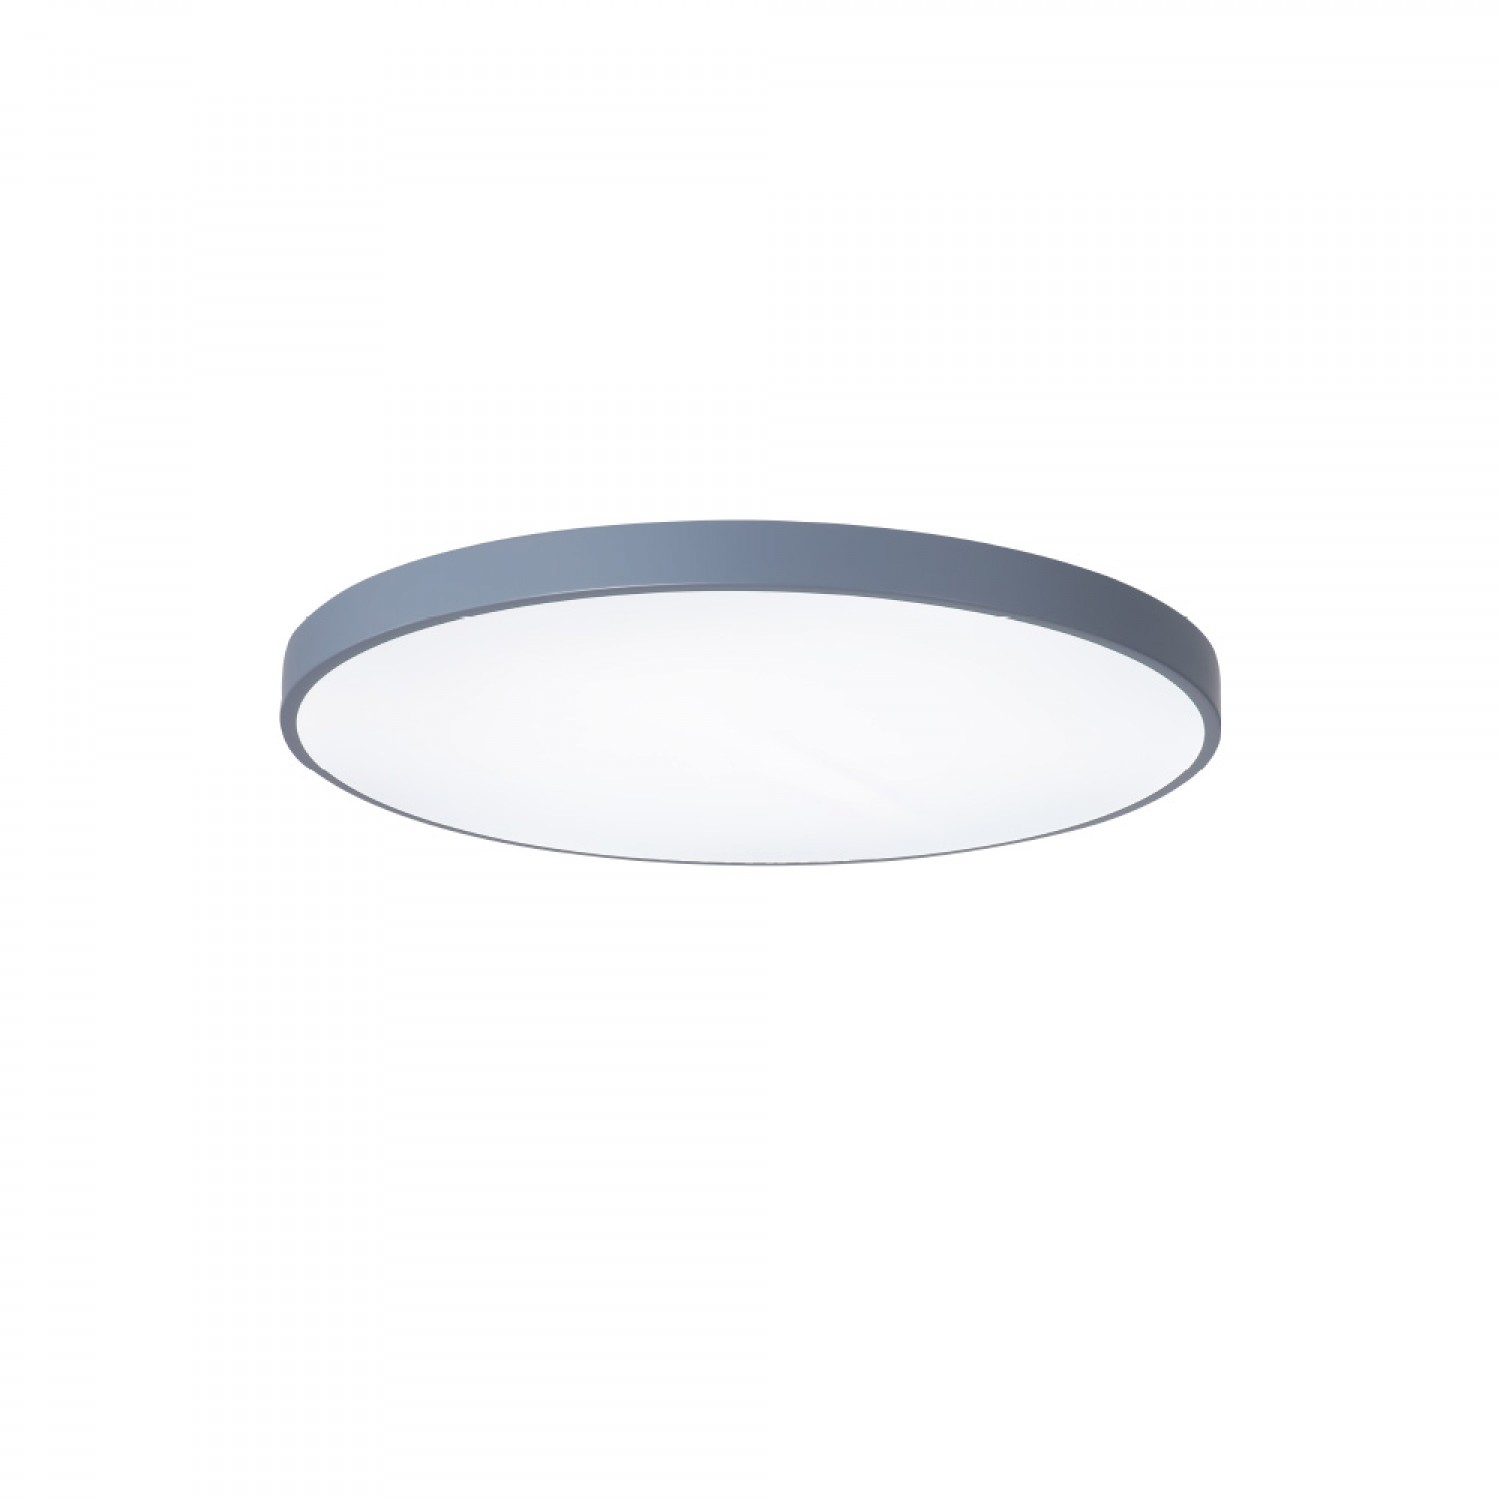 Πλαφονιέρα οροφής LED 32W 3CCT (by switch on base) από γκρι μέταλλο και ακρυλικό D:40cm (42035-C-Gray)